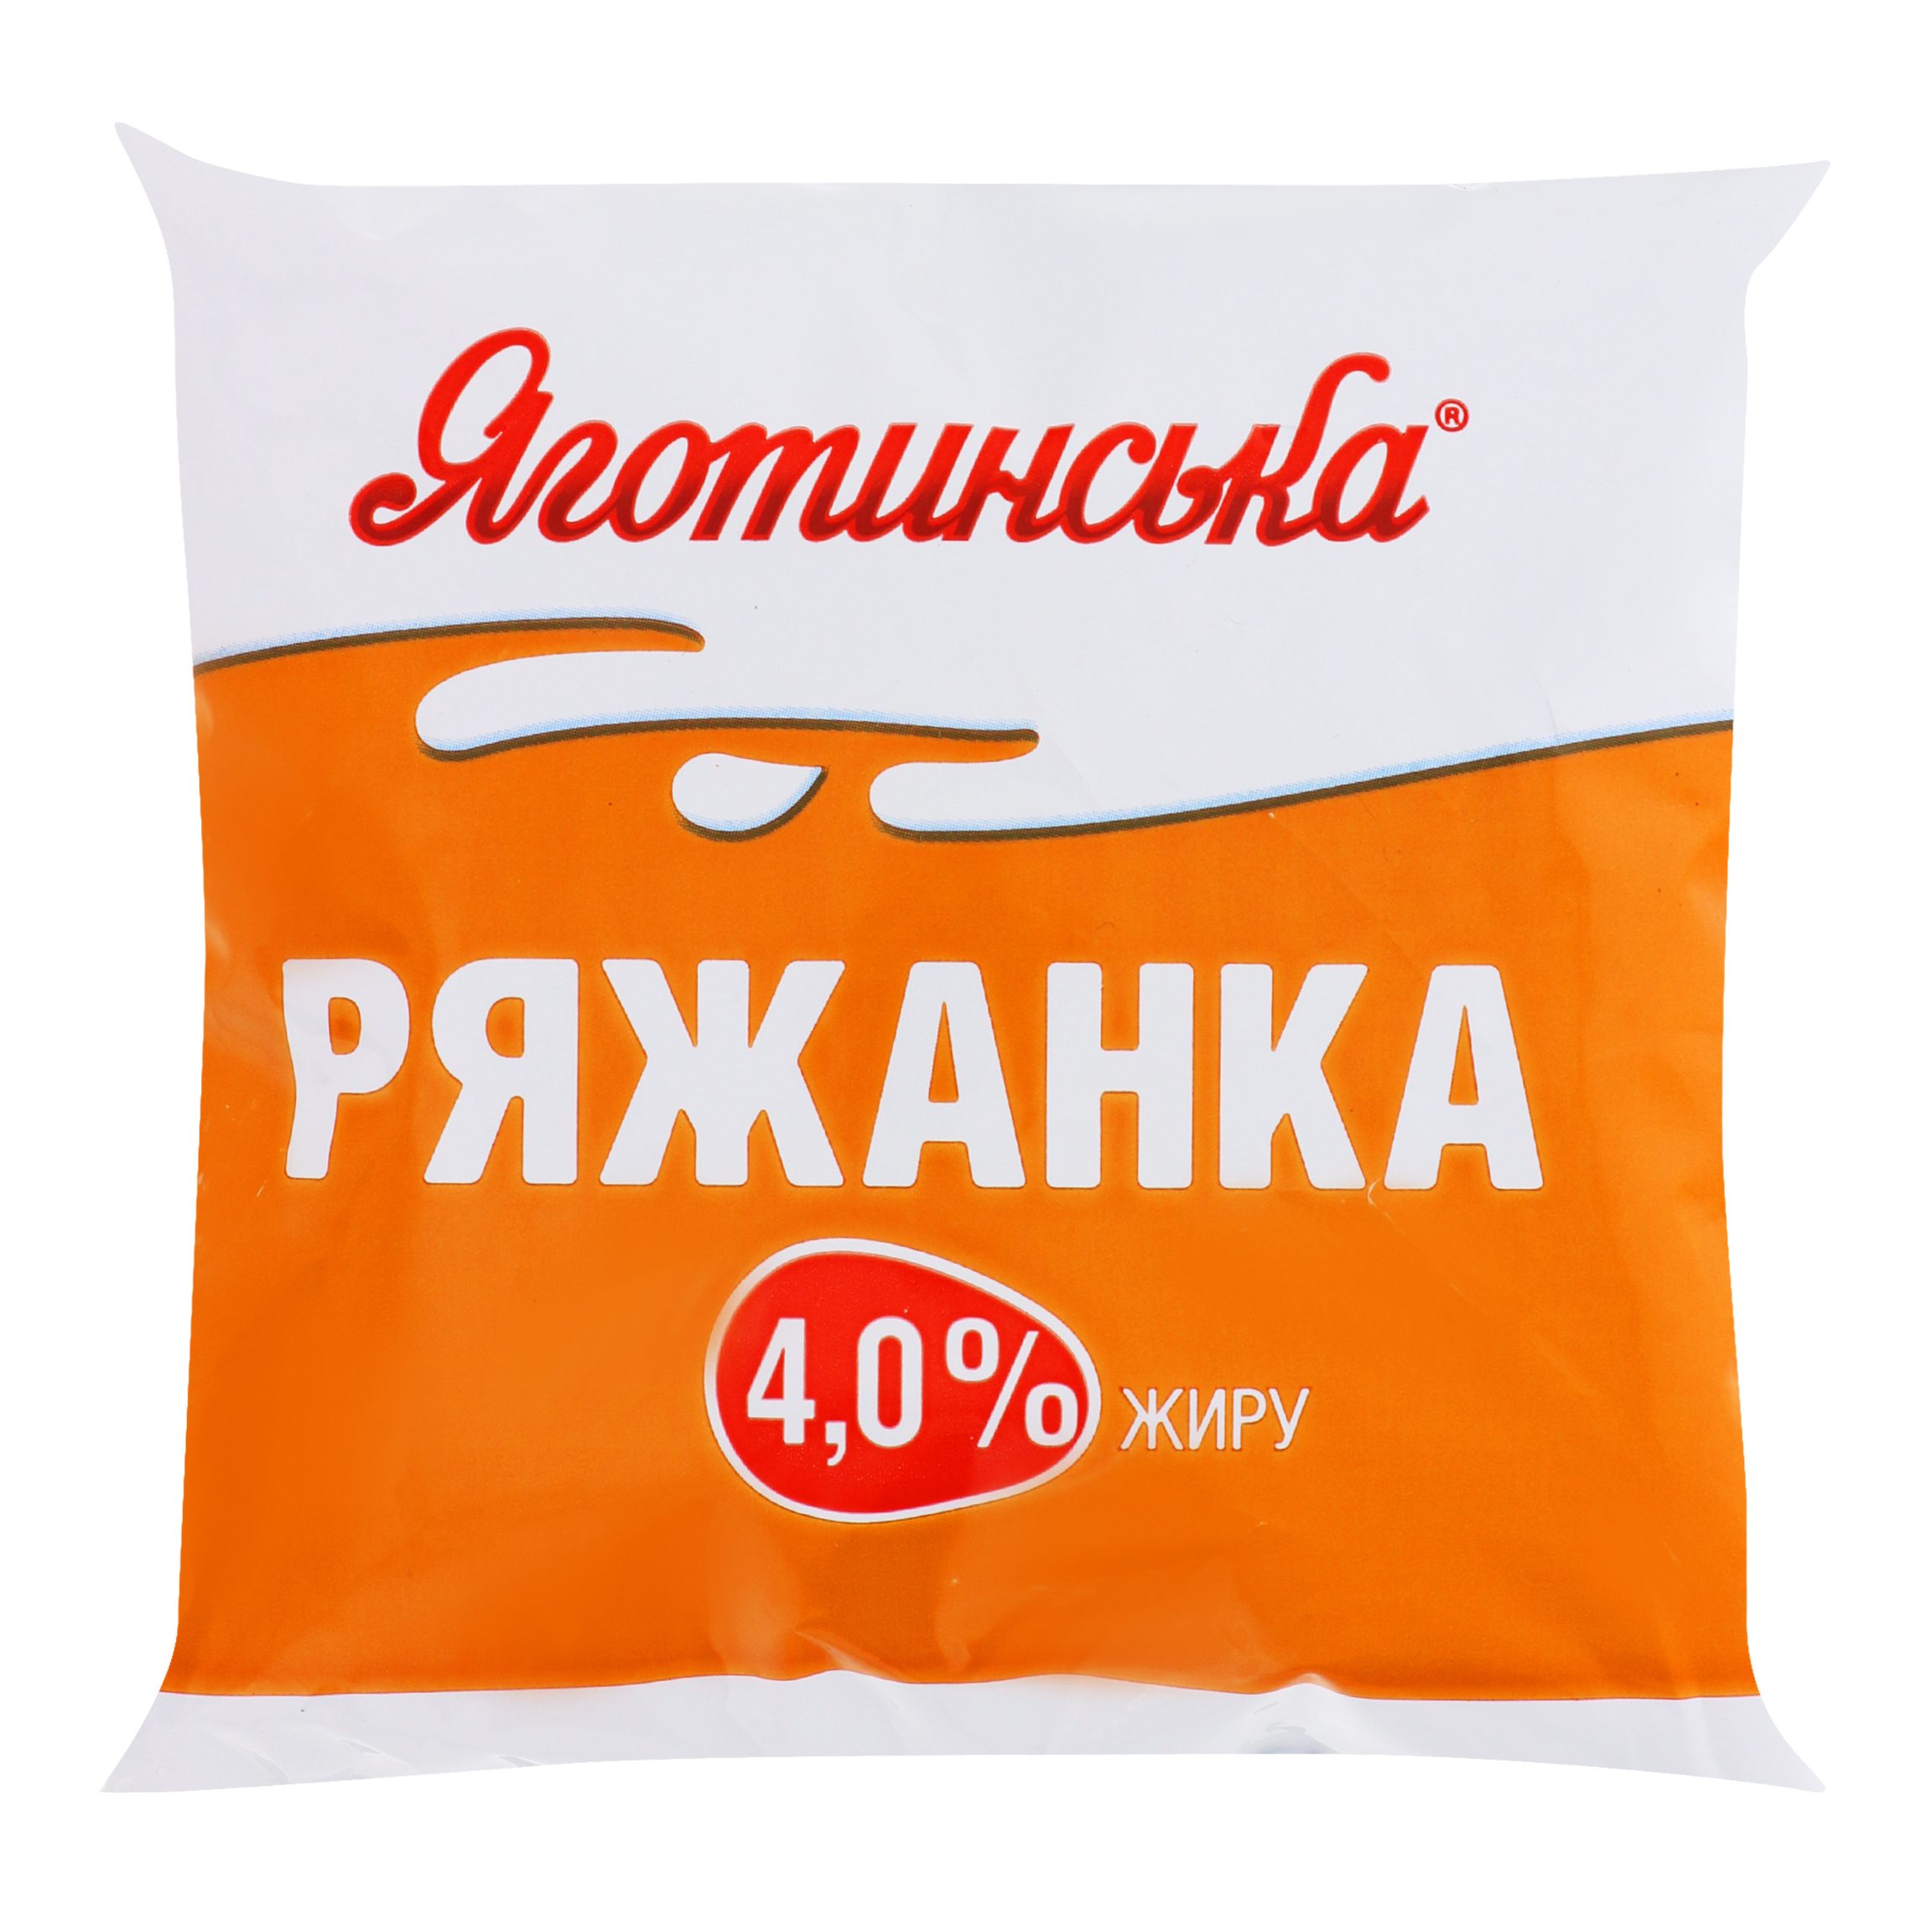 Fermented baked milk Yahotynska, foil 4% 400g